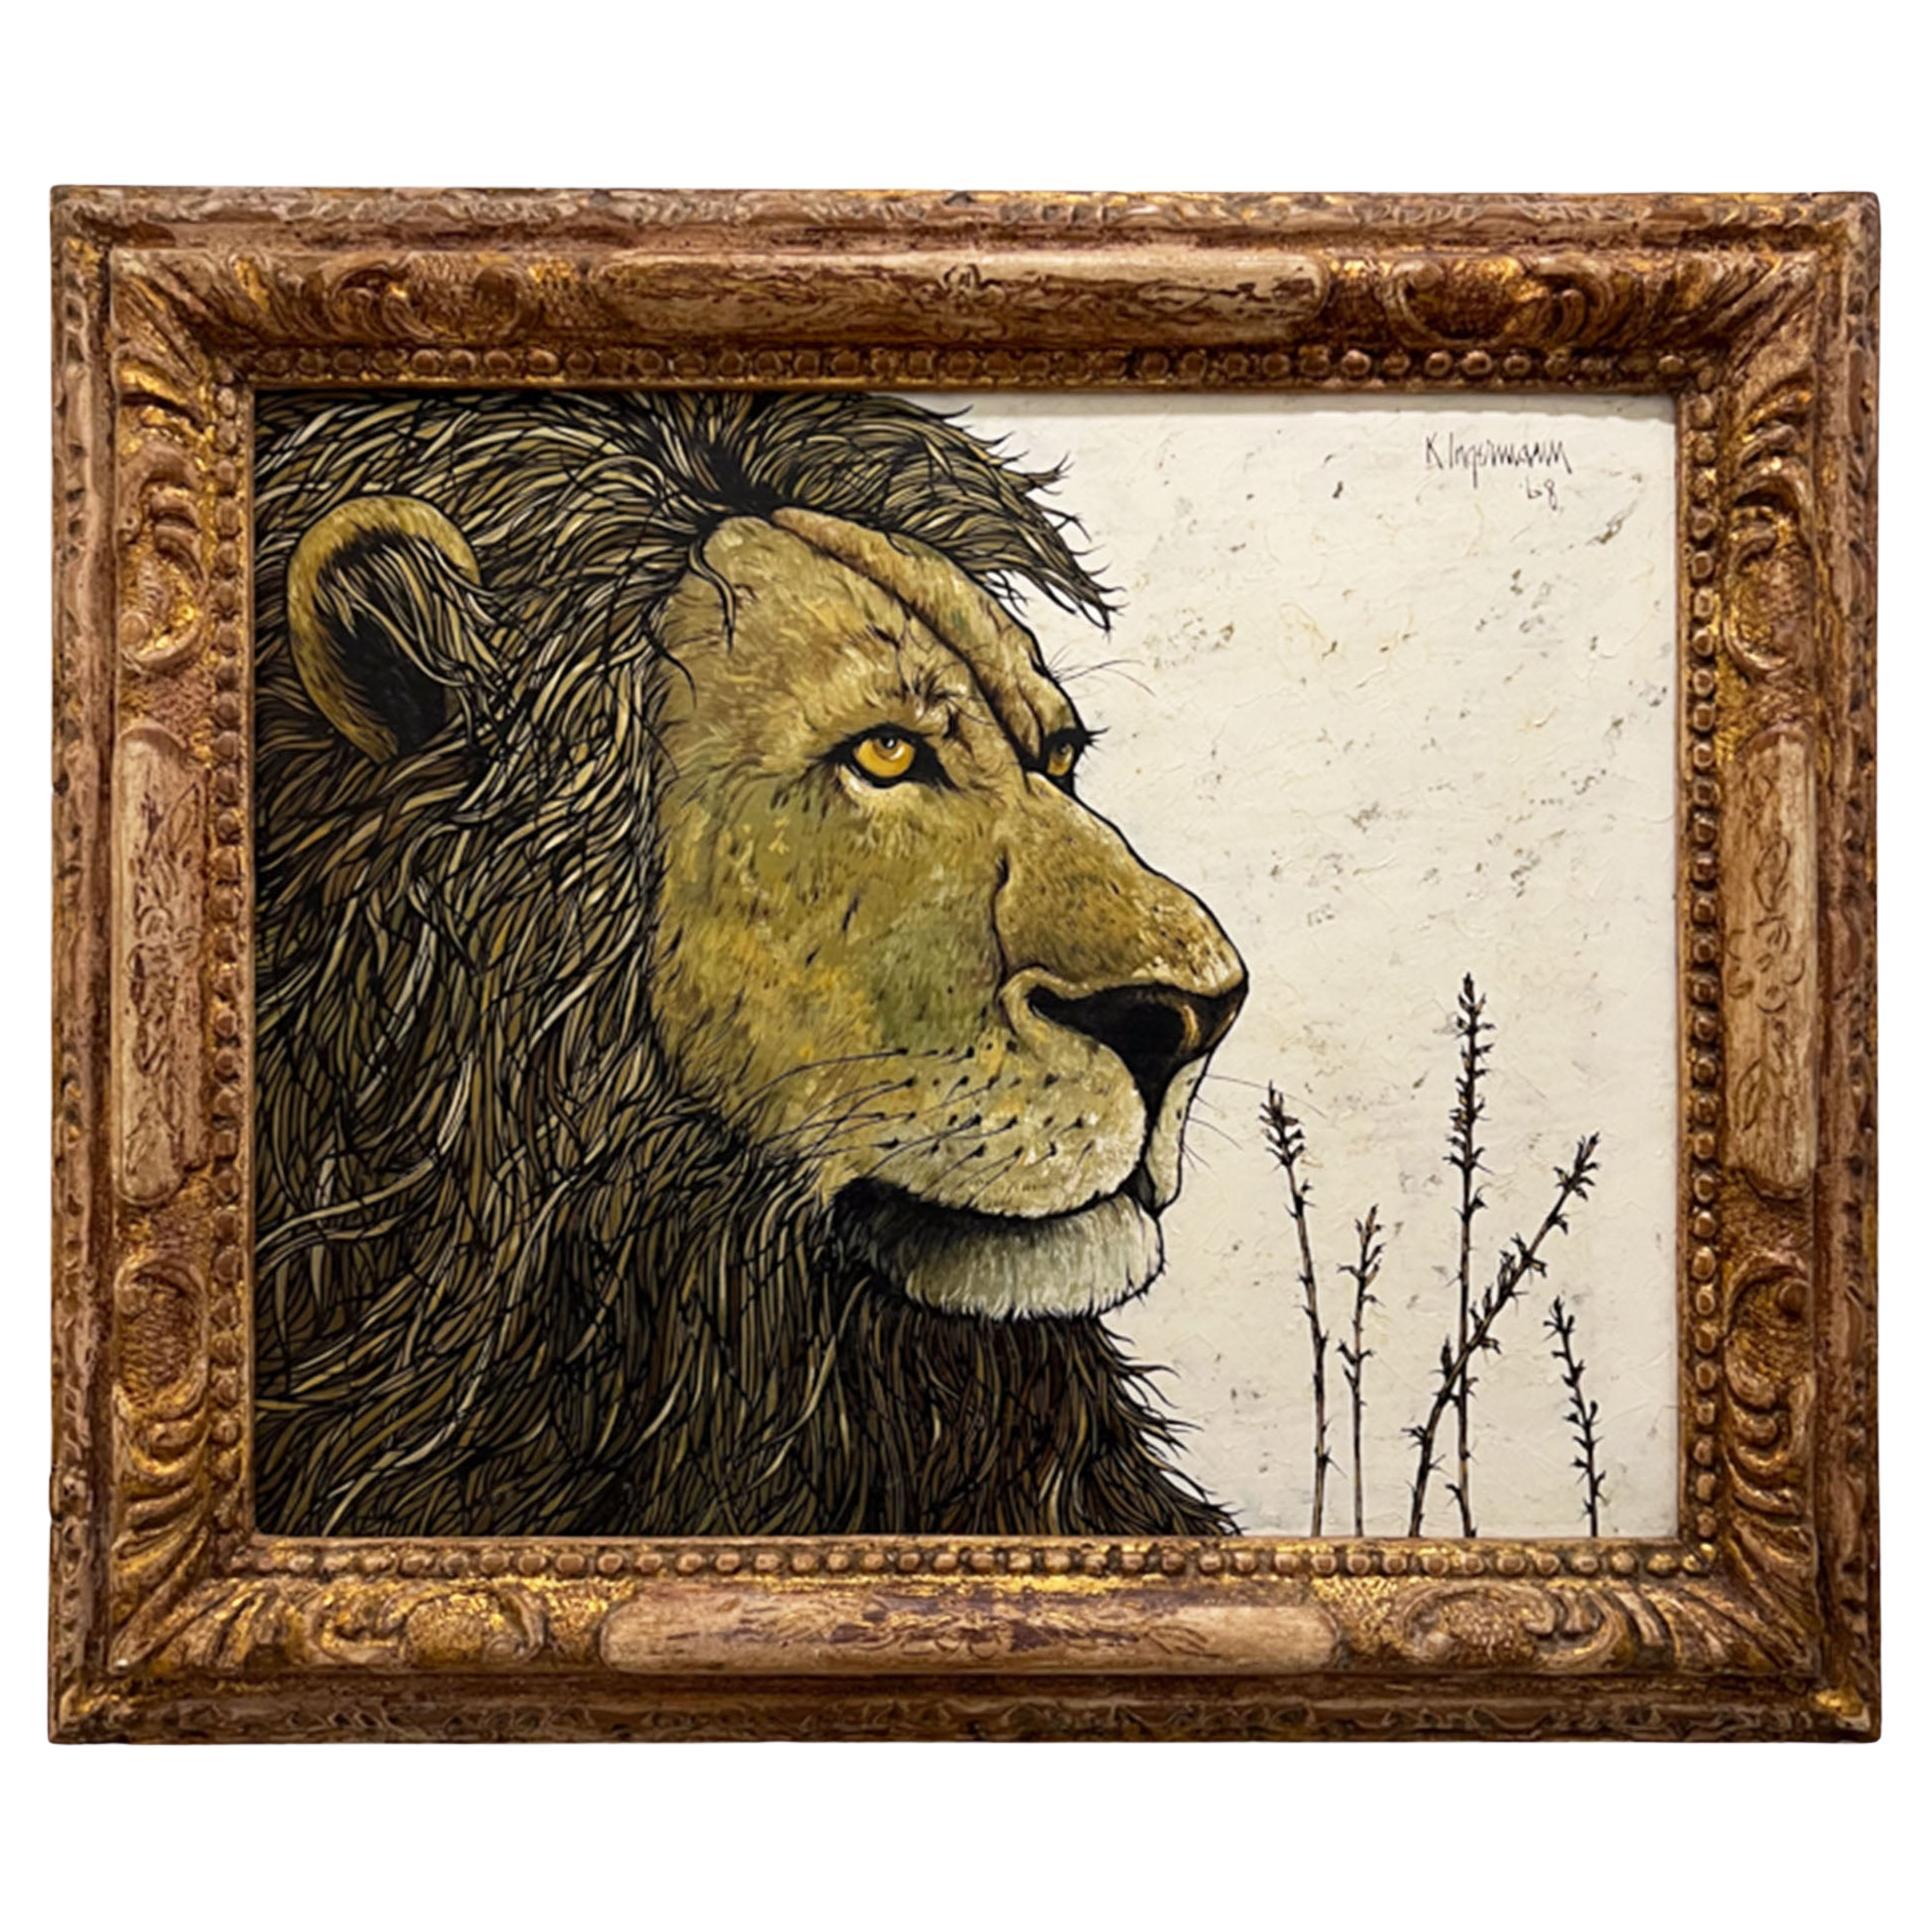 'A Lion's Head' 1968 Oil on Board, K Ingerman 1929 - 2012 For Sale